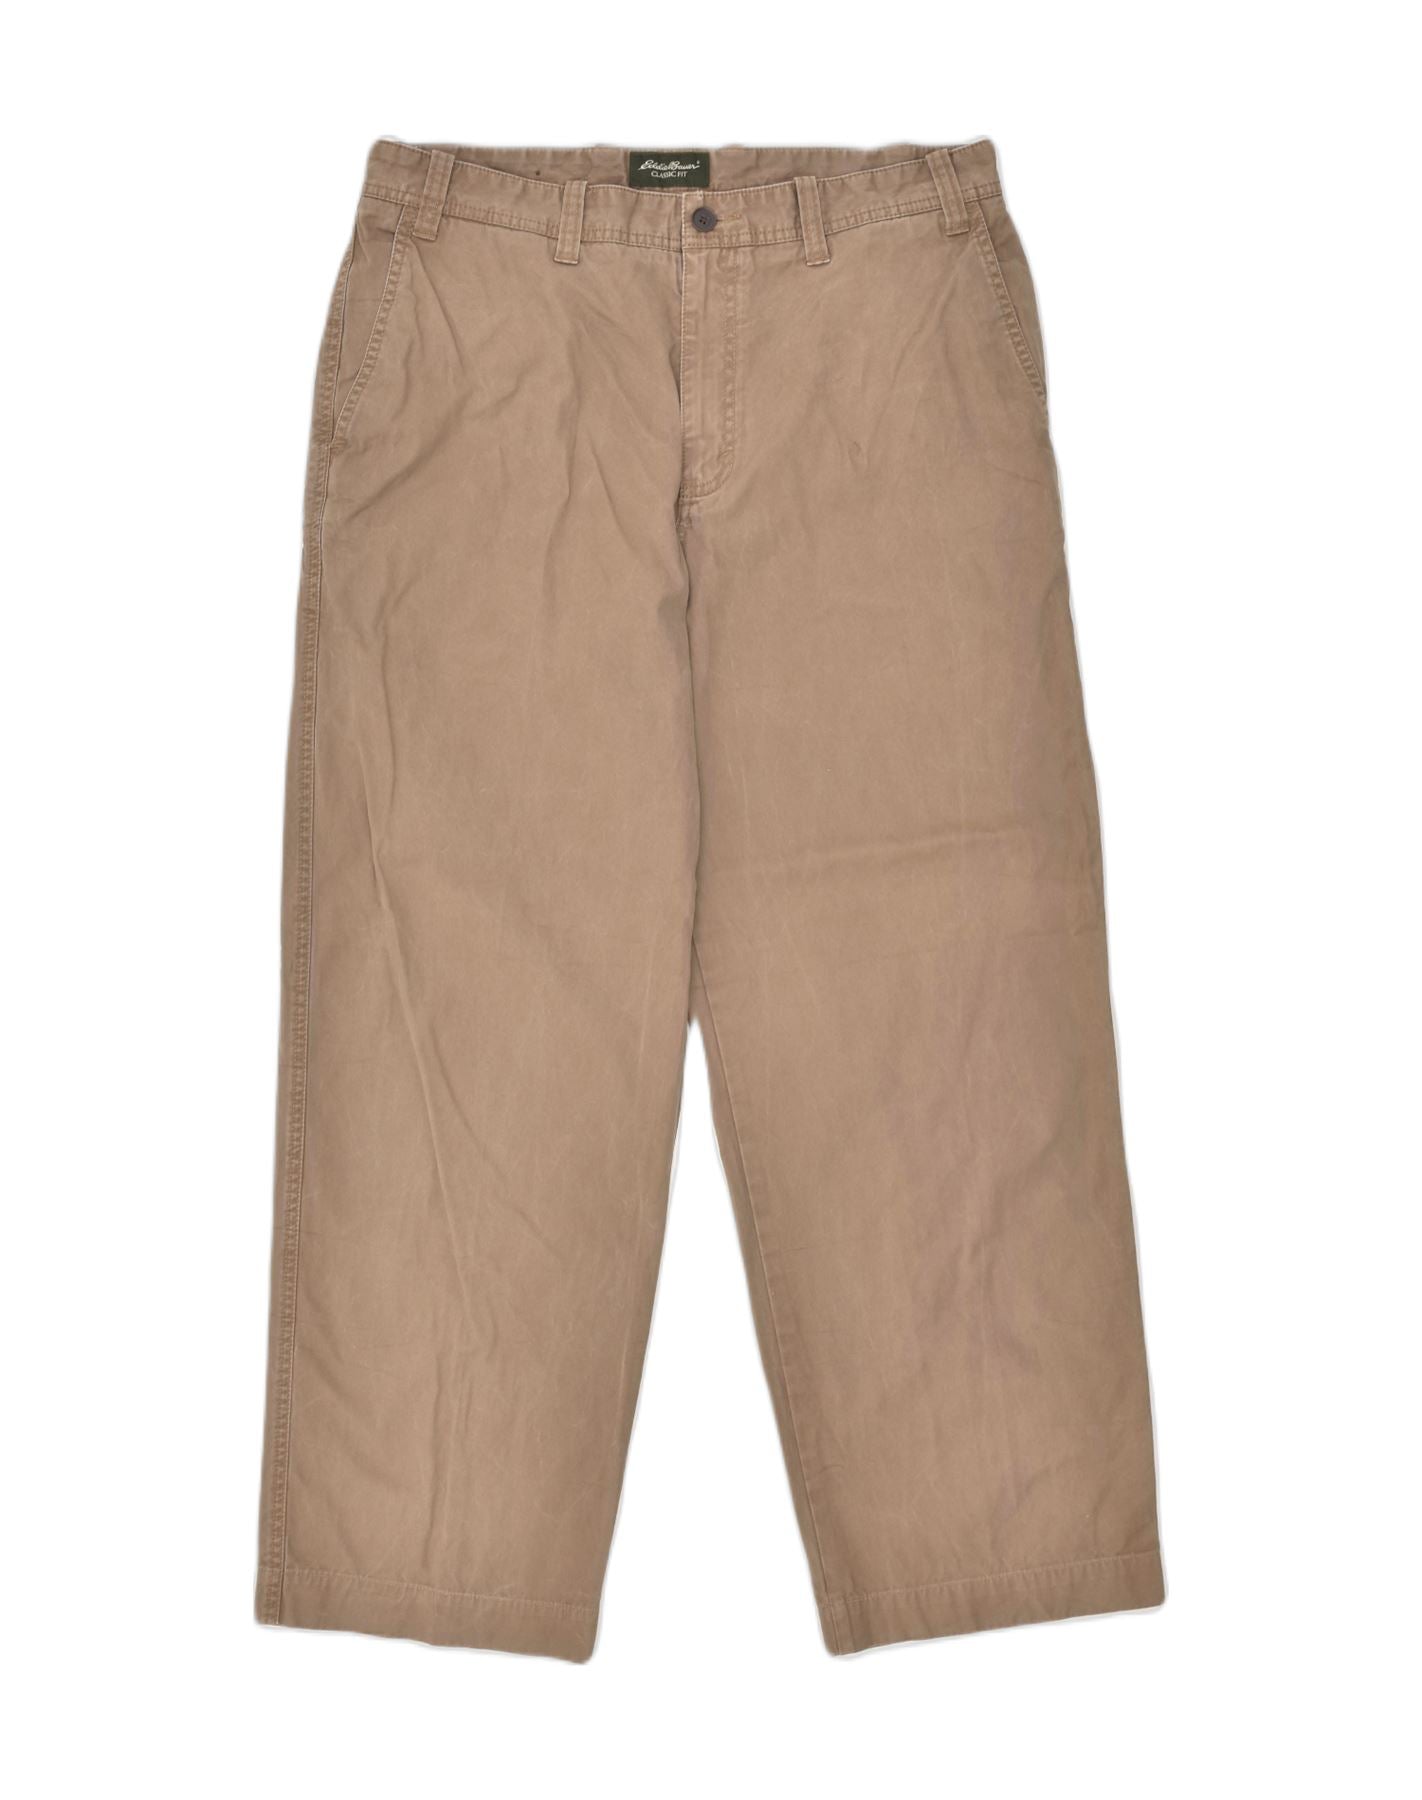 Eddie Bauer Blakely Fit Khaki Pants 12 Tall | Pants for women, Khaki pants,  Khaki